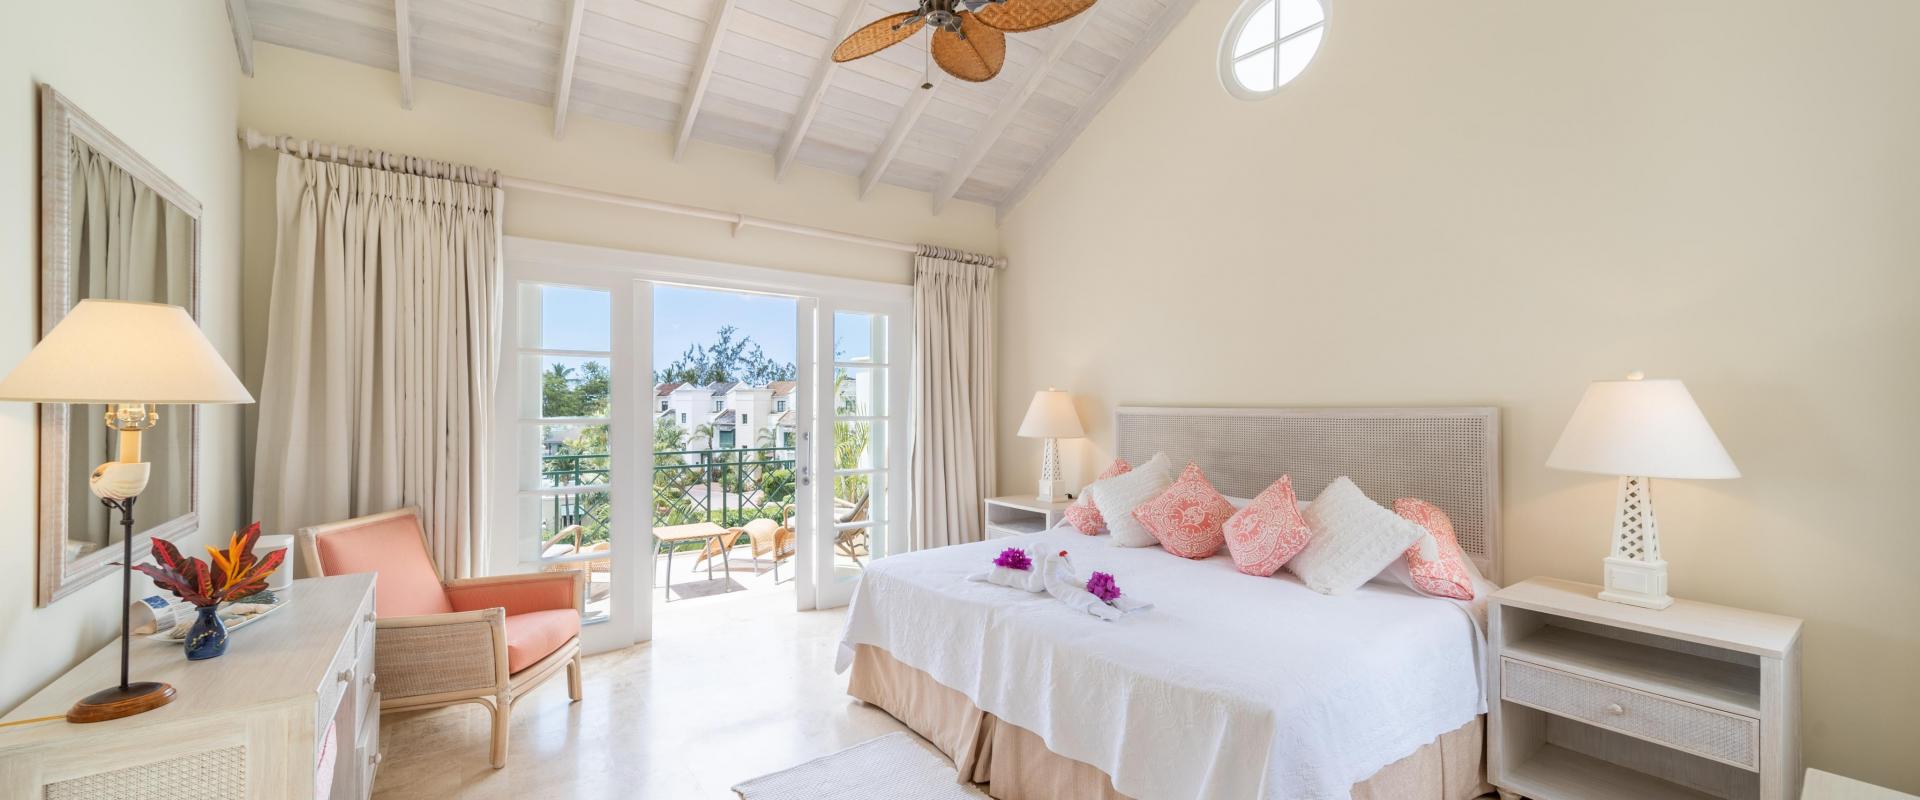 Coco Mullins Barbados Holiday Rental Home Master Bedroom